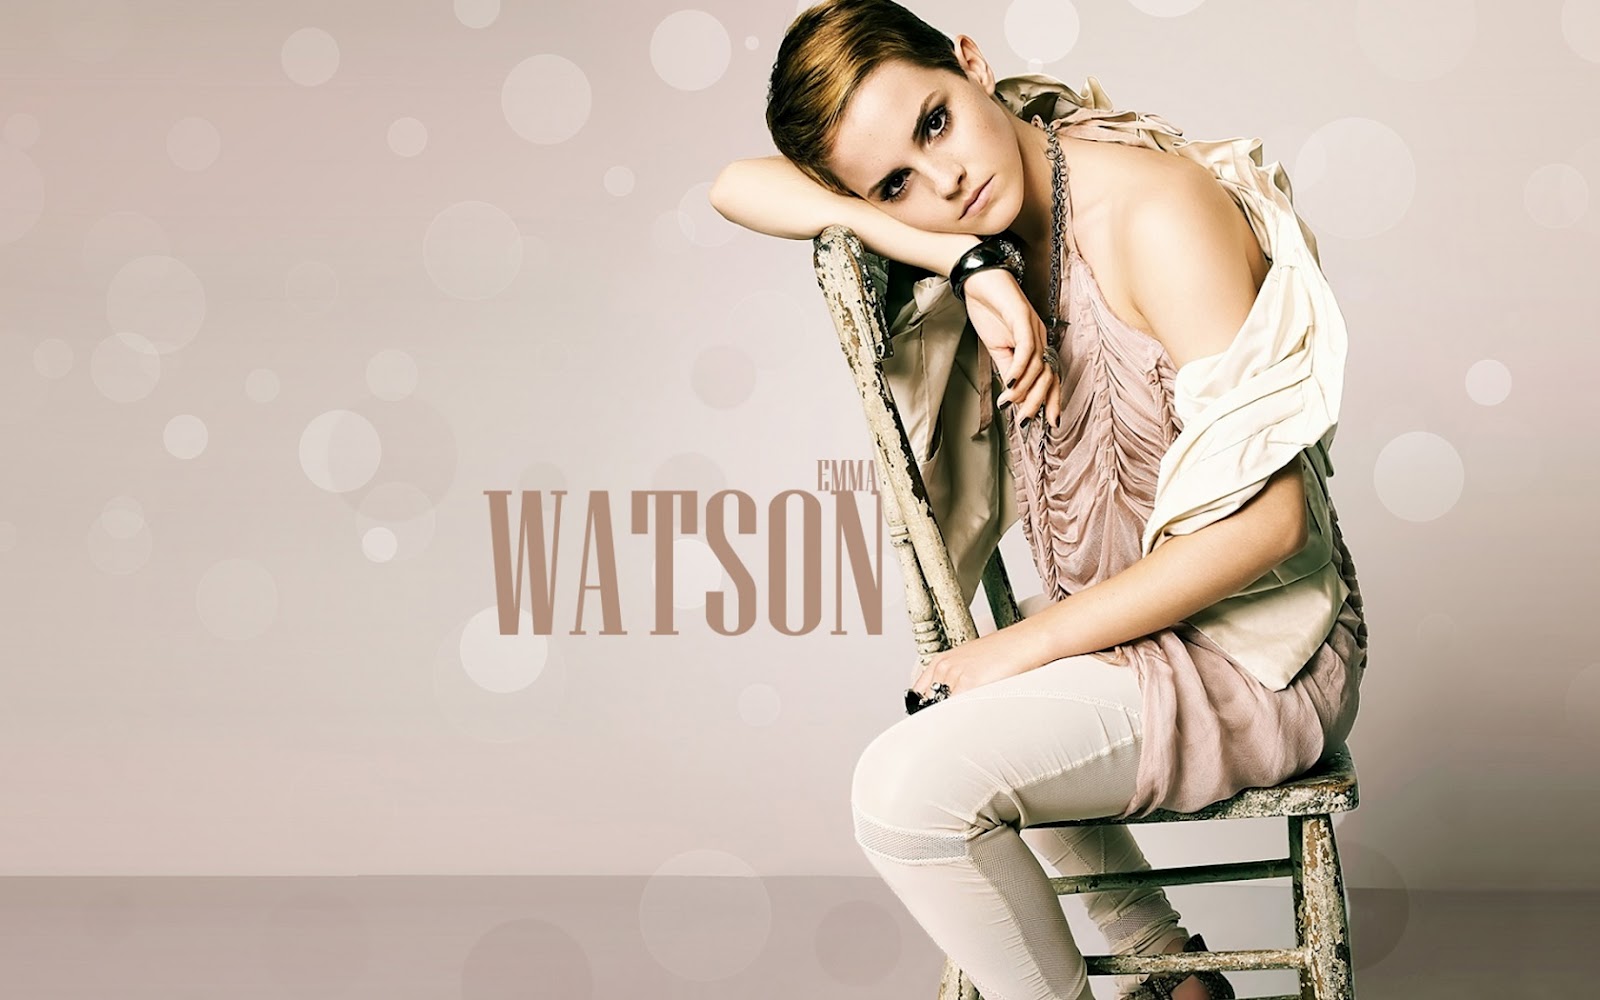 Emma Watson Cute And Beautiful - HD Wallpaper 